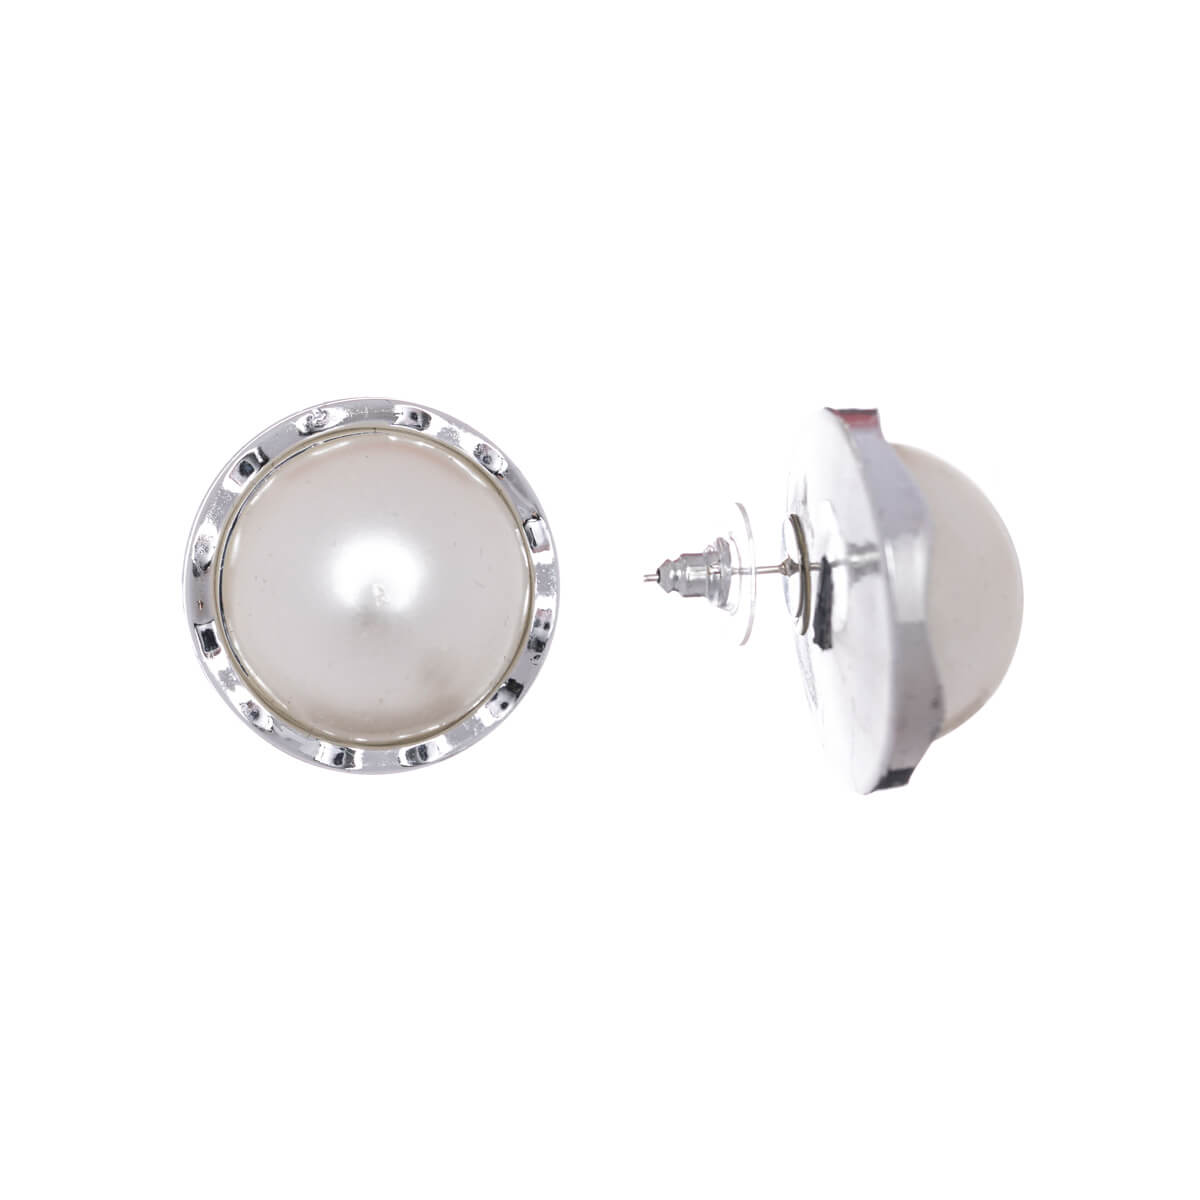 Big round pearl earrings 3cm